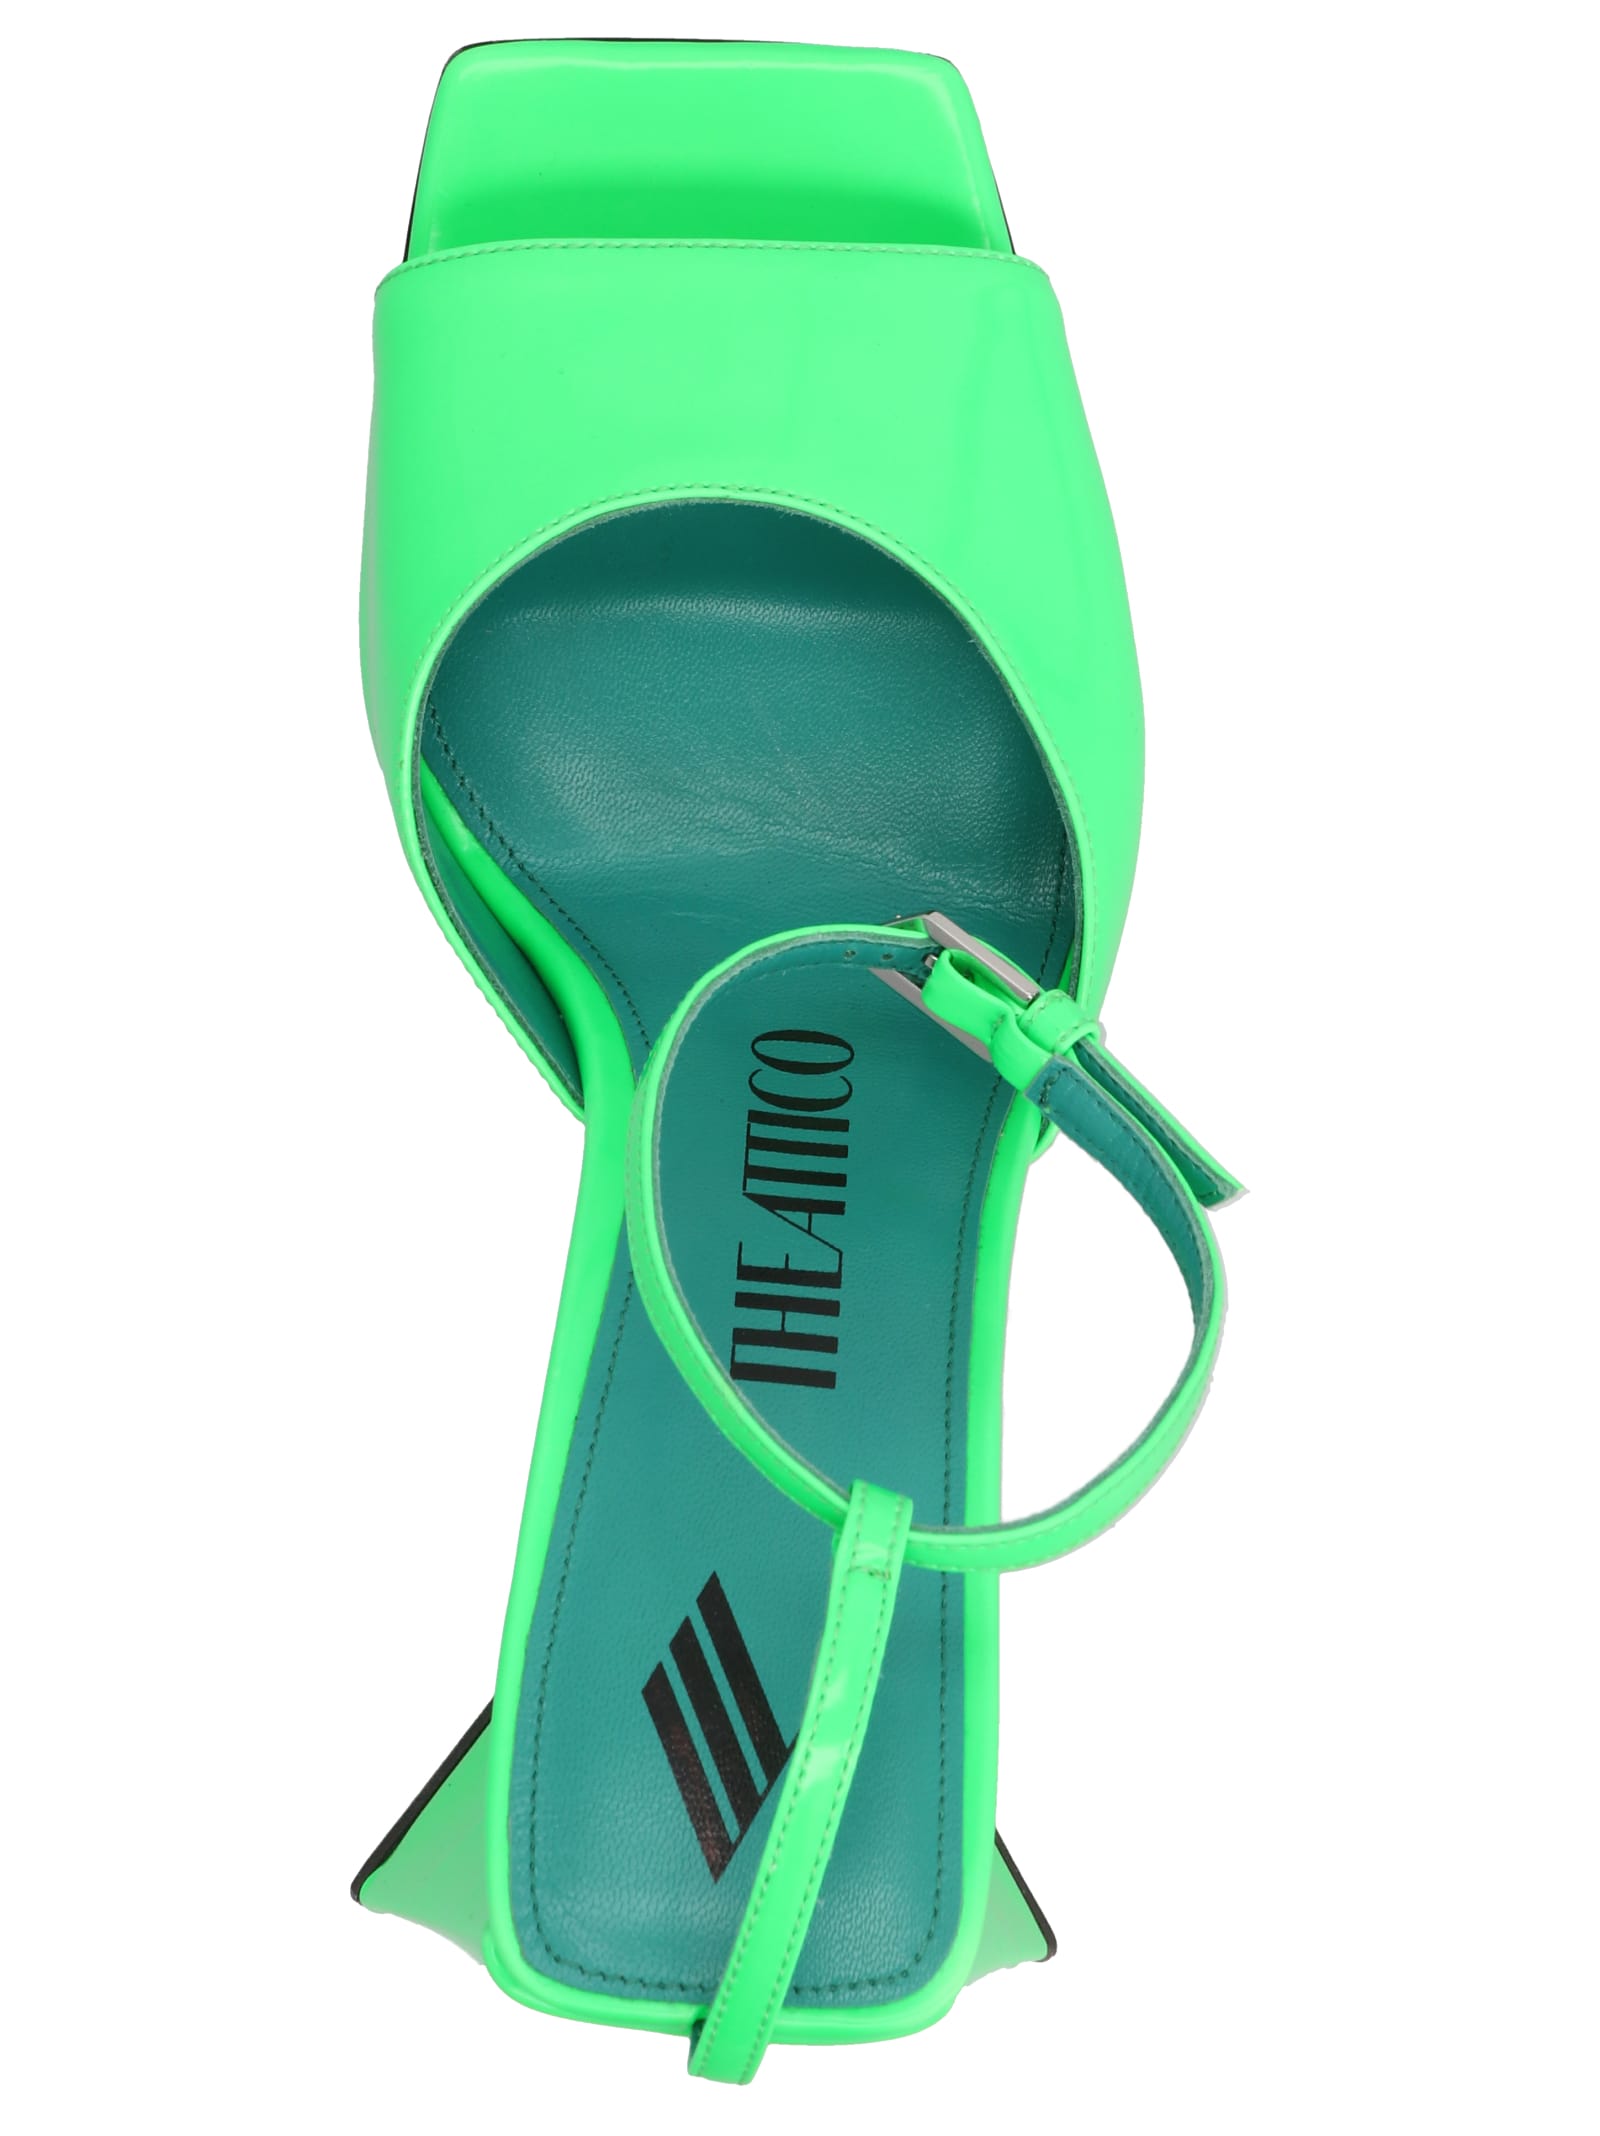 Shop Attico Piper Sandals In Green